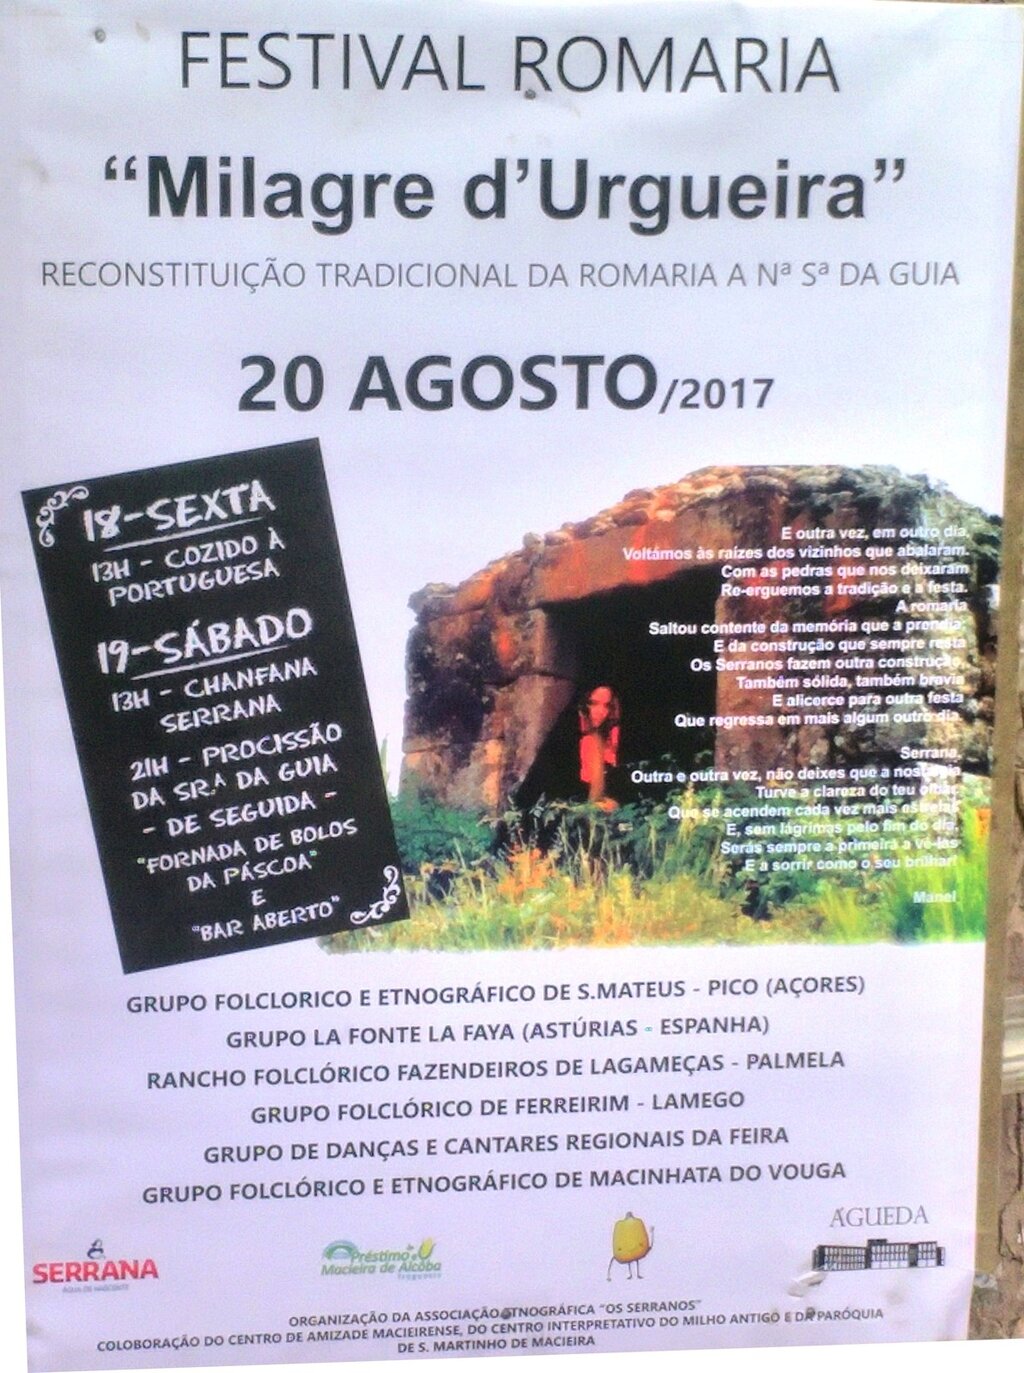 Festival Romaria "Milagre d'Urgueira", Urgueira, Macieira de Alcôba